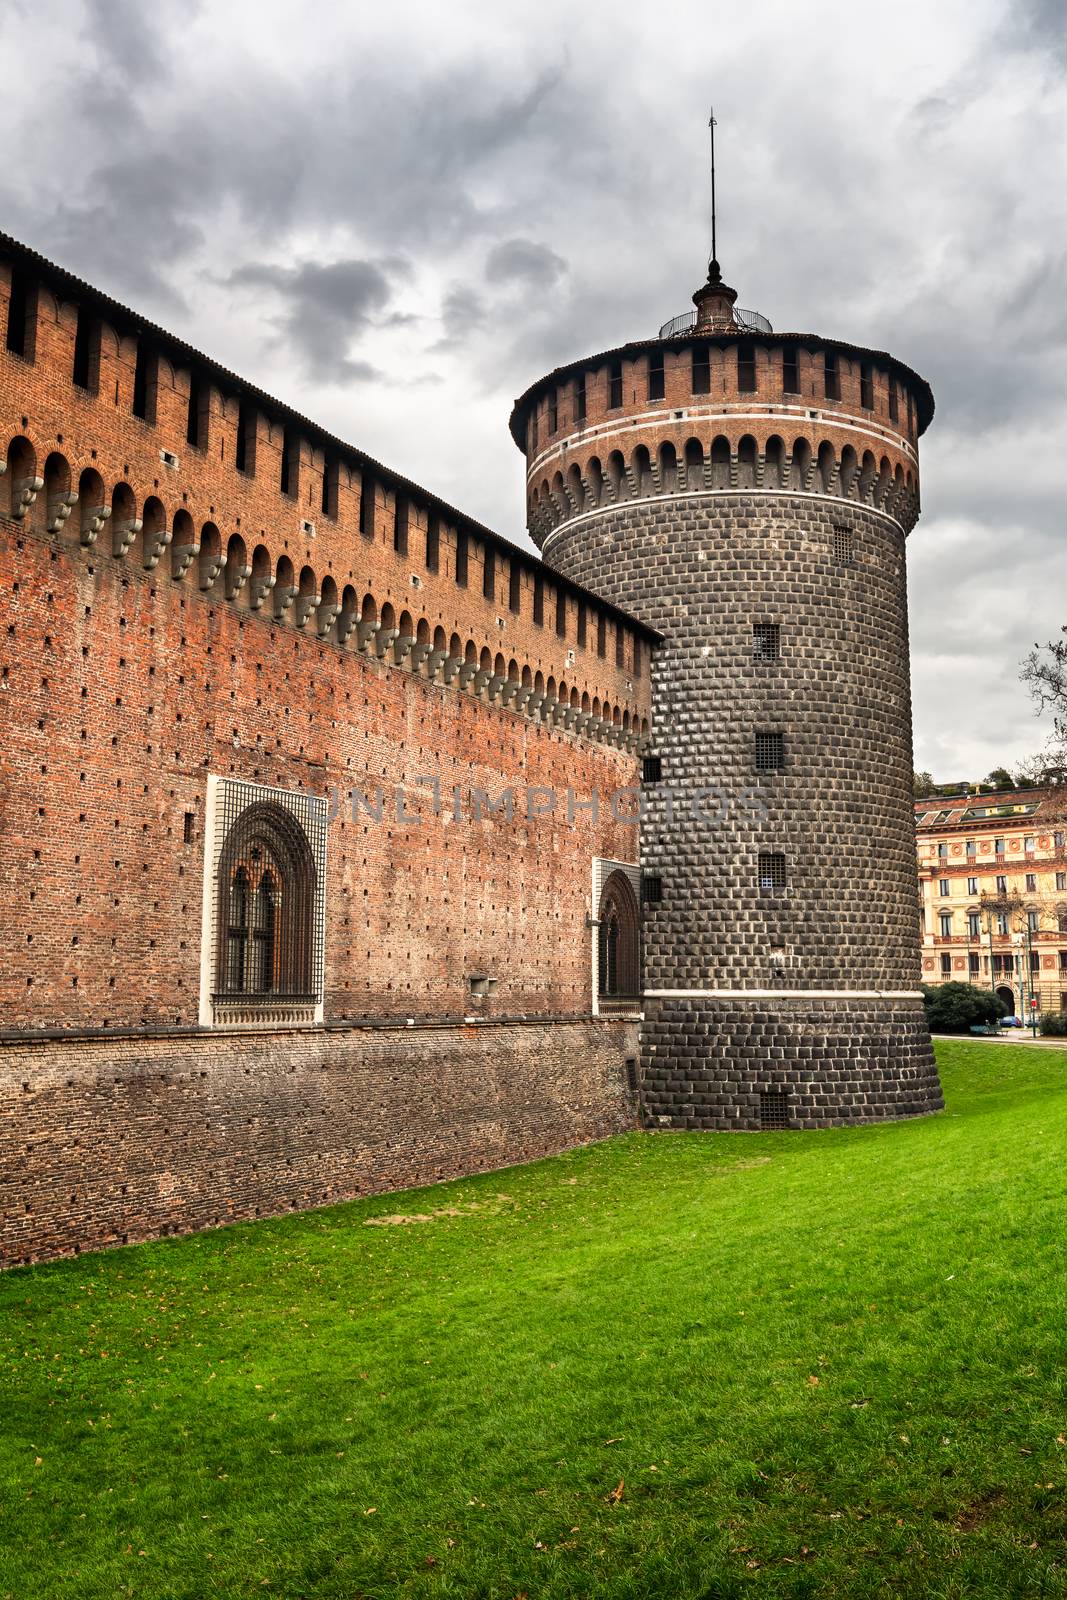 The Outer Wall of Castello Sforzesco (Sforza Castle) in Milan, I by anshar